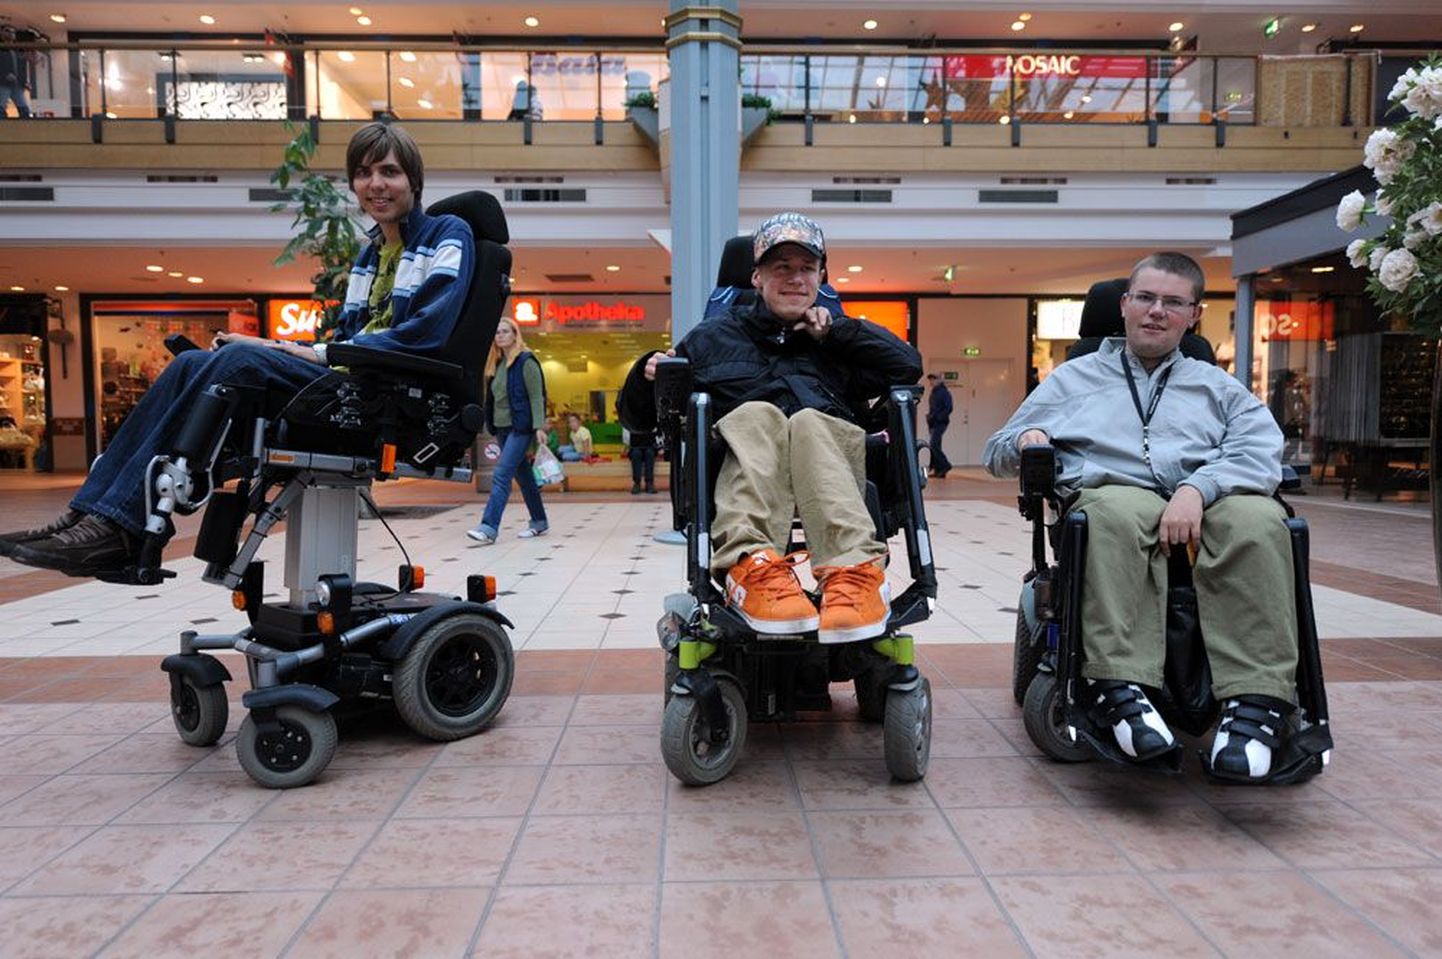 Rõõmsate ratastoolis noorte Tauno Terve (vasakult), Karl Neilinni ja Jüri Lehtmetsa soov on, et teataks rohkem ratastooliinimeste tegevusest. Nii korraldavad nad homme Kristiine keskuses ürituse, et tavainimesi ja ratastoolis liiklejaid omavahel lähendada.